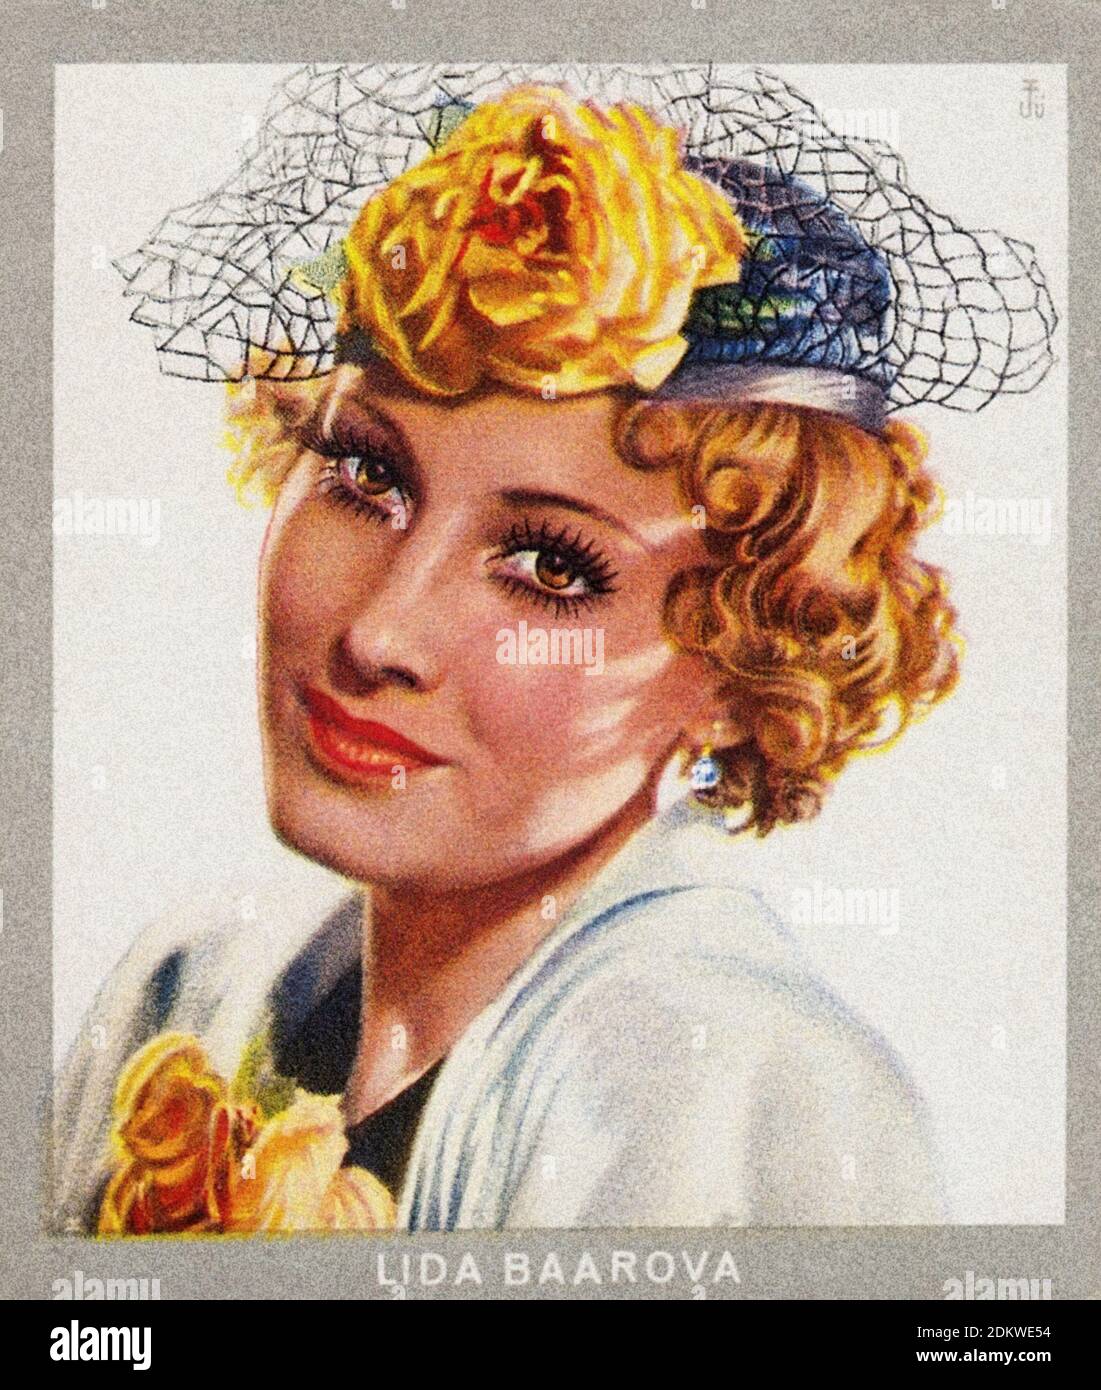 Deutsche antike Zigaretten Karten. Monopol Zigaretten 'series Künstler im Film'. Lida Baarova, tschechische Schauspielerin. 1937 Lida Baarova (geb. Ludmila Babkova; 7 Stockfoto